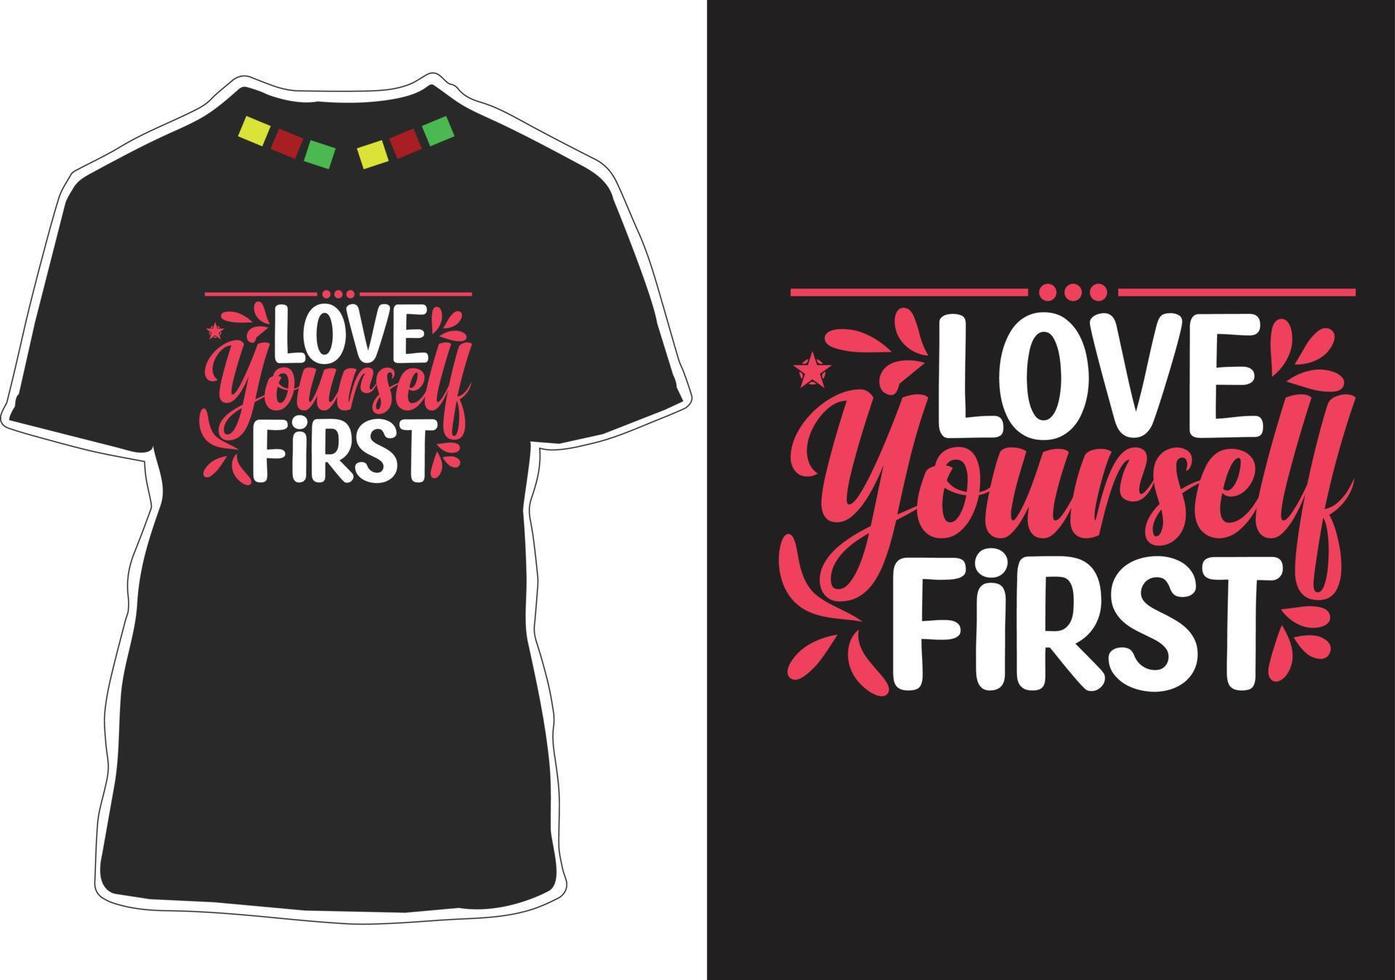 hou van jezelf eerst motiverende citaten t-shirtontwerp vector